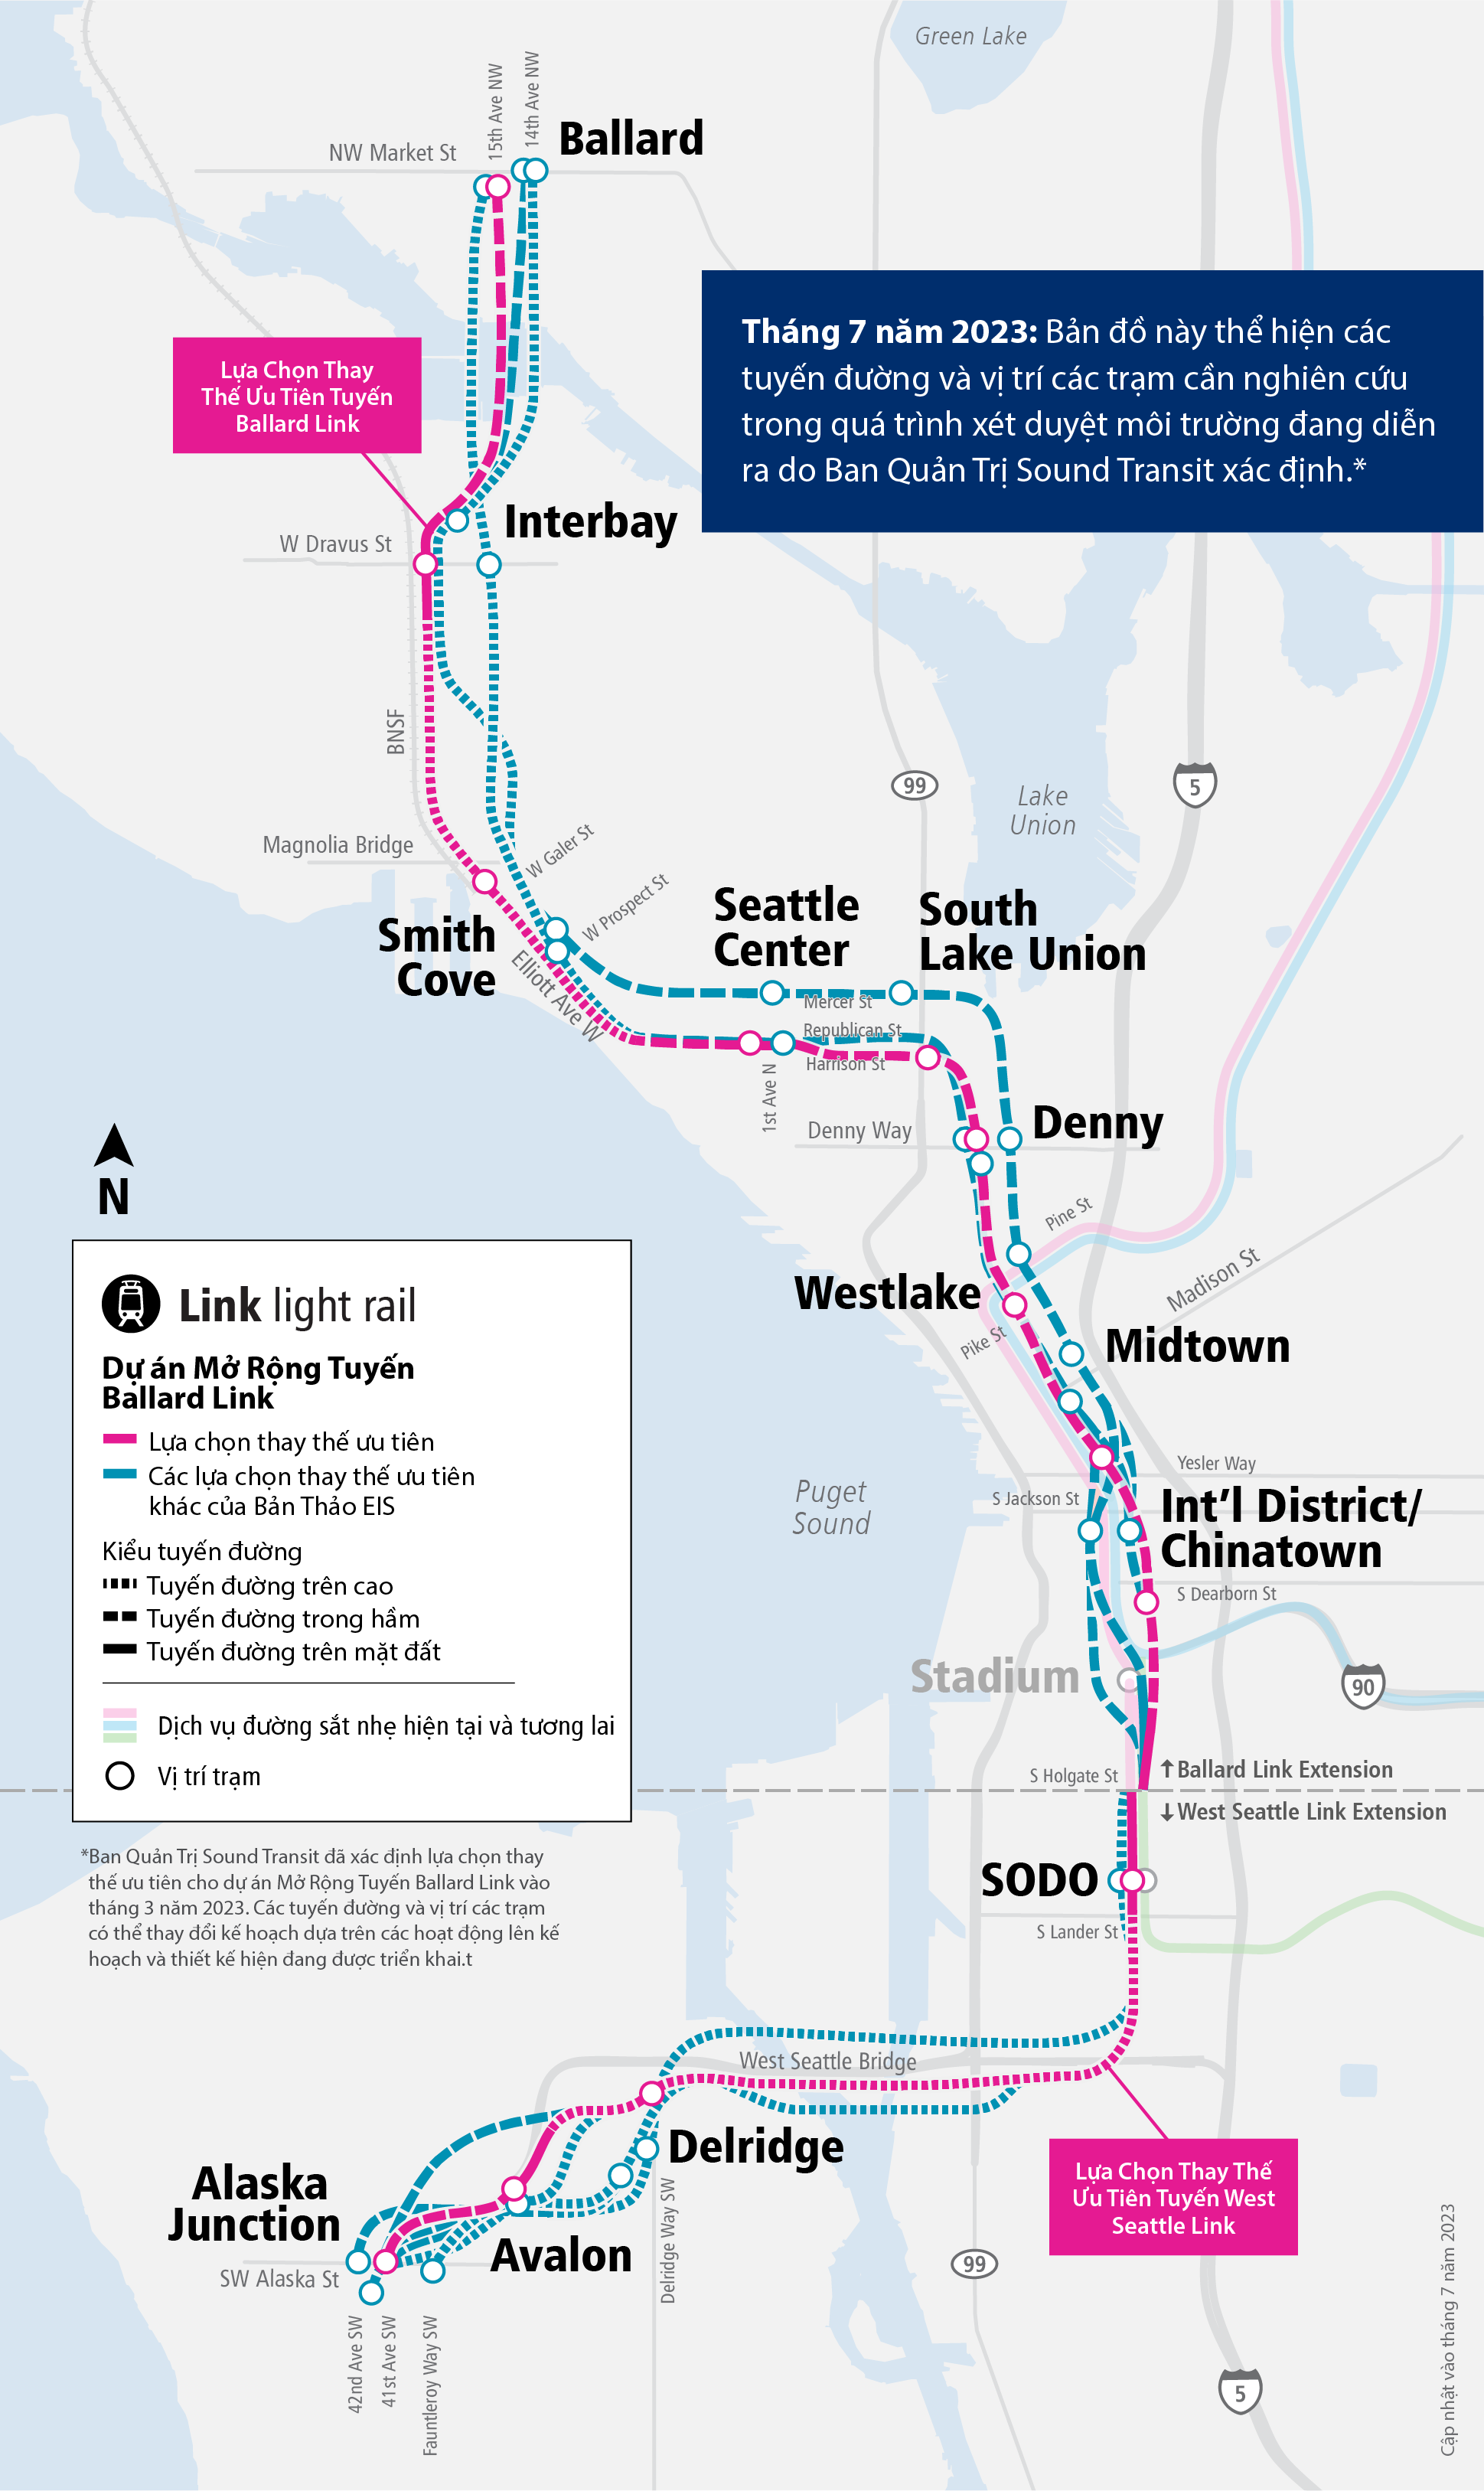 Hình ảnh minh hoạ bản đồ các dự án Mở Rộng Tuyến West Seattle và Ballard Link, trong đó trình bày các lựa chọn thay thế ưu tiên và những lựa chọn thay thế khác hiện đang được chúng tôi đánh giá. Bản đồ cũng bao gồm vị trí các trạm và mô tả liệu lựa chọn thay thế sẽ được bố trí trên cao, trong đường hầm hay đồng mức.